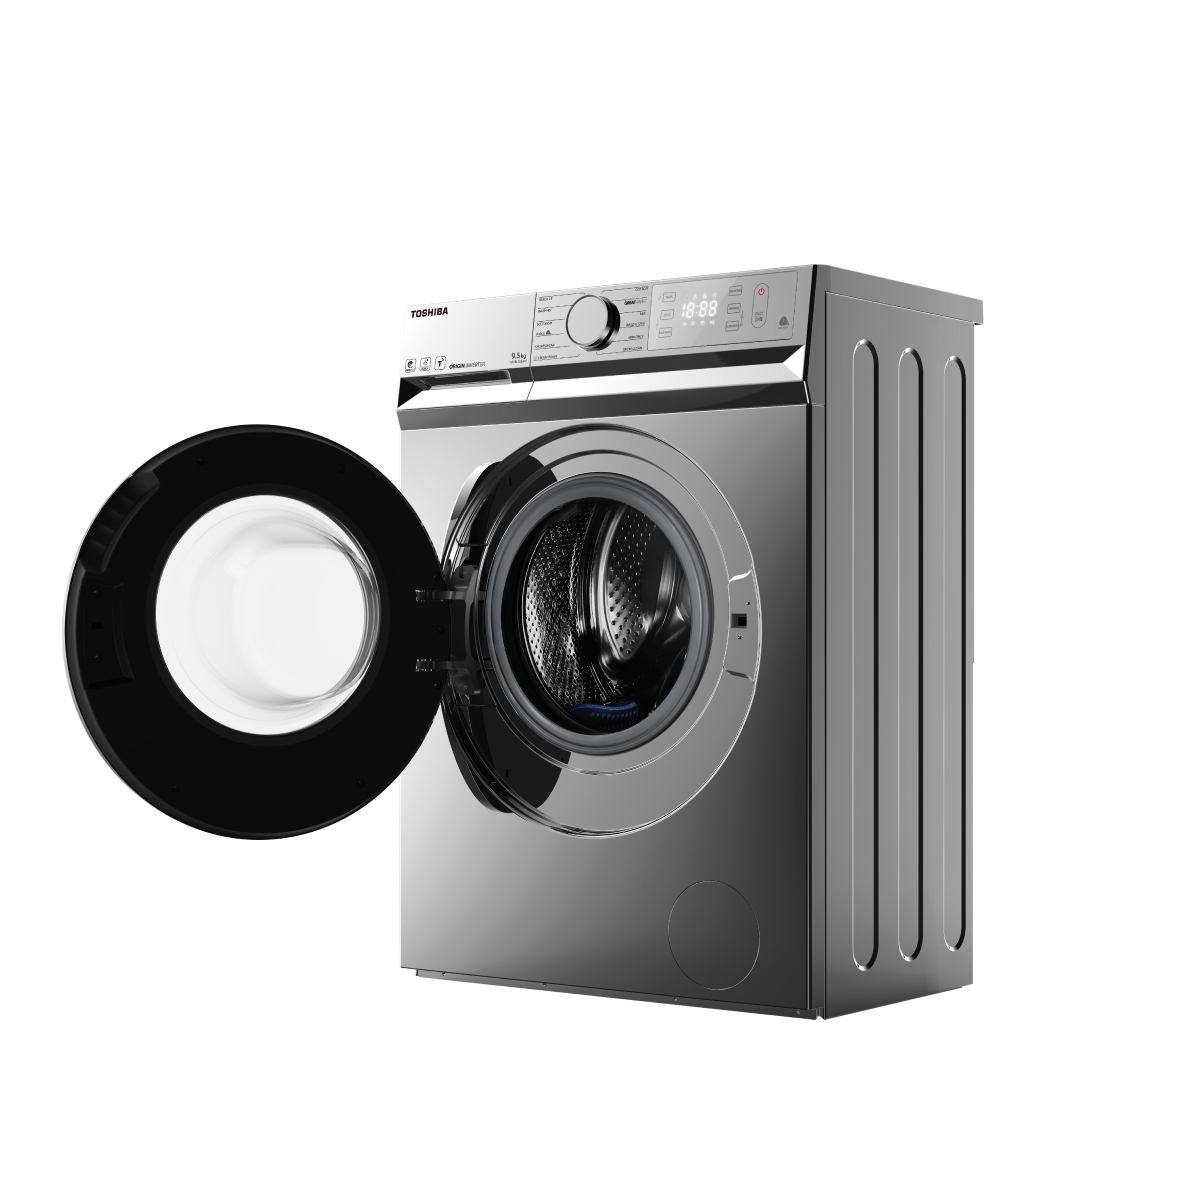 Một chiếc máy giặt front load chất lượng cao sẽ đem lại trải nghiệm giặt giũ tuyệt vời. Việc sử dụng máy giặt front load giúp tiết kiệm nước và tiền điện, giặt sạch và khử mùi hơn. Hãy xem hình ảnh để khám phá thêm về sản phẩm chất lượng này.